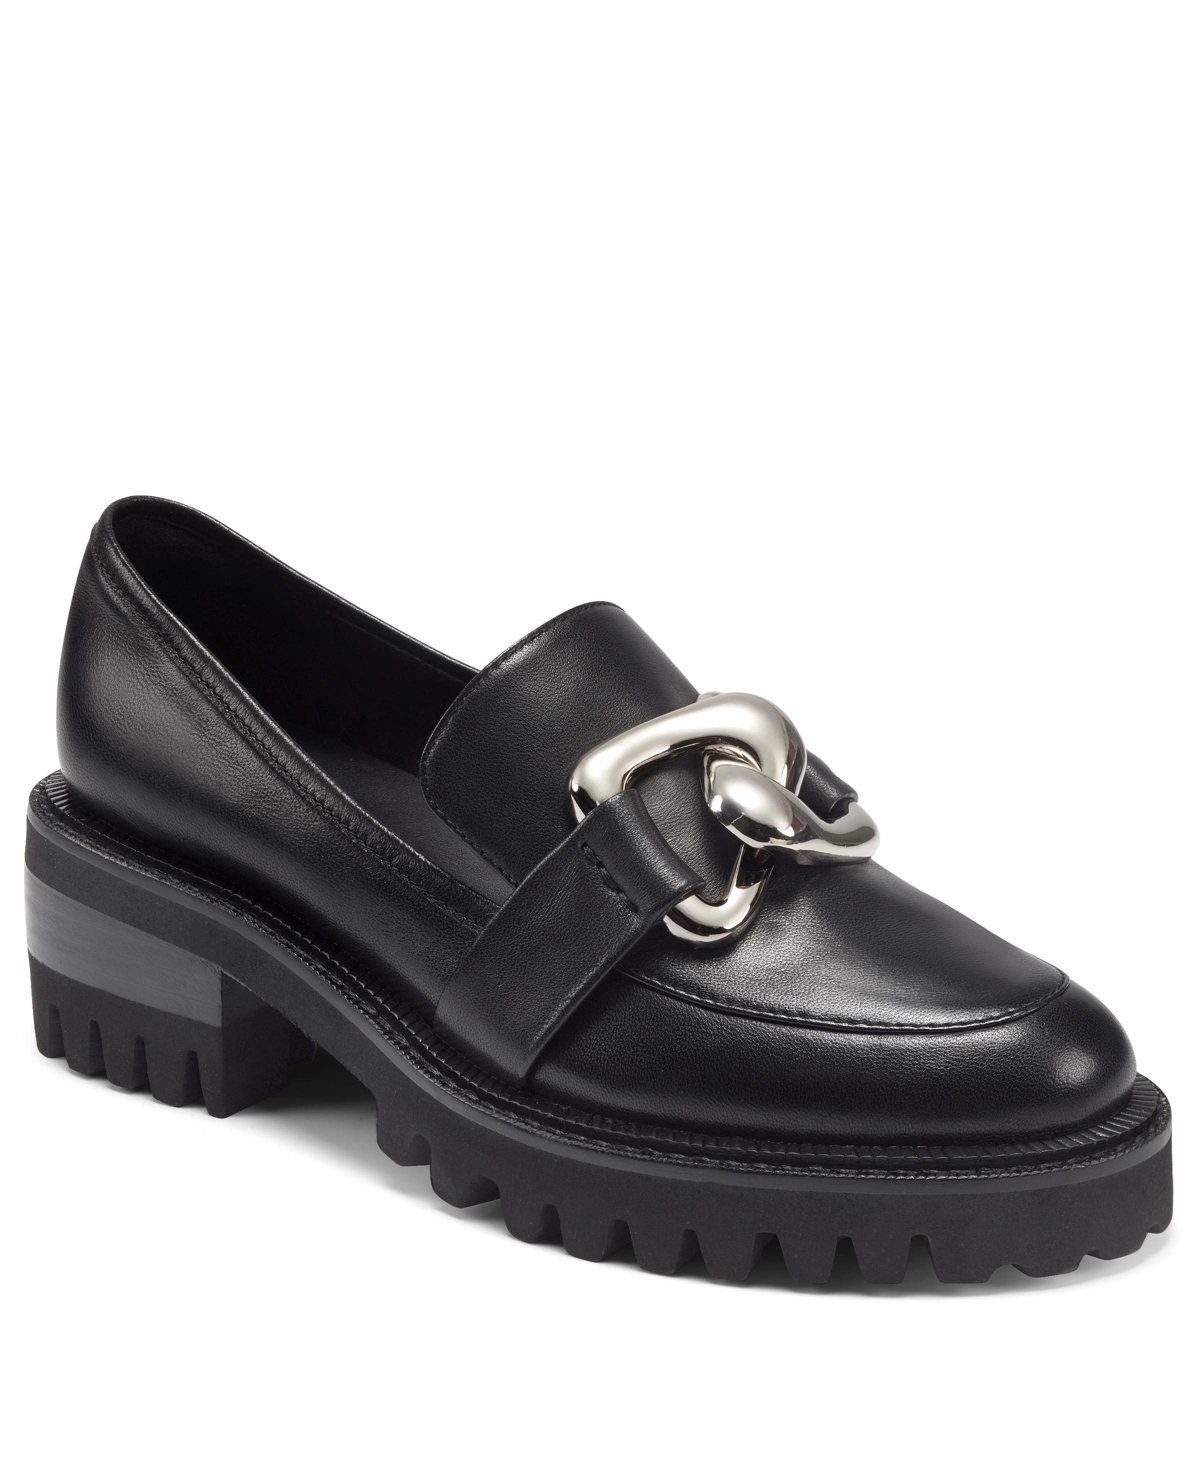 Lilia Dress Heel Loafer - Black Leather